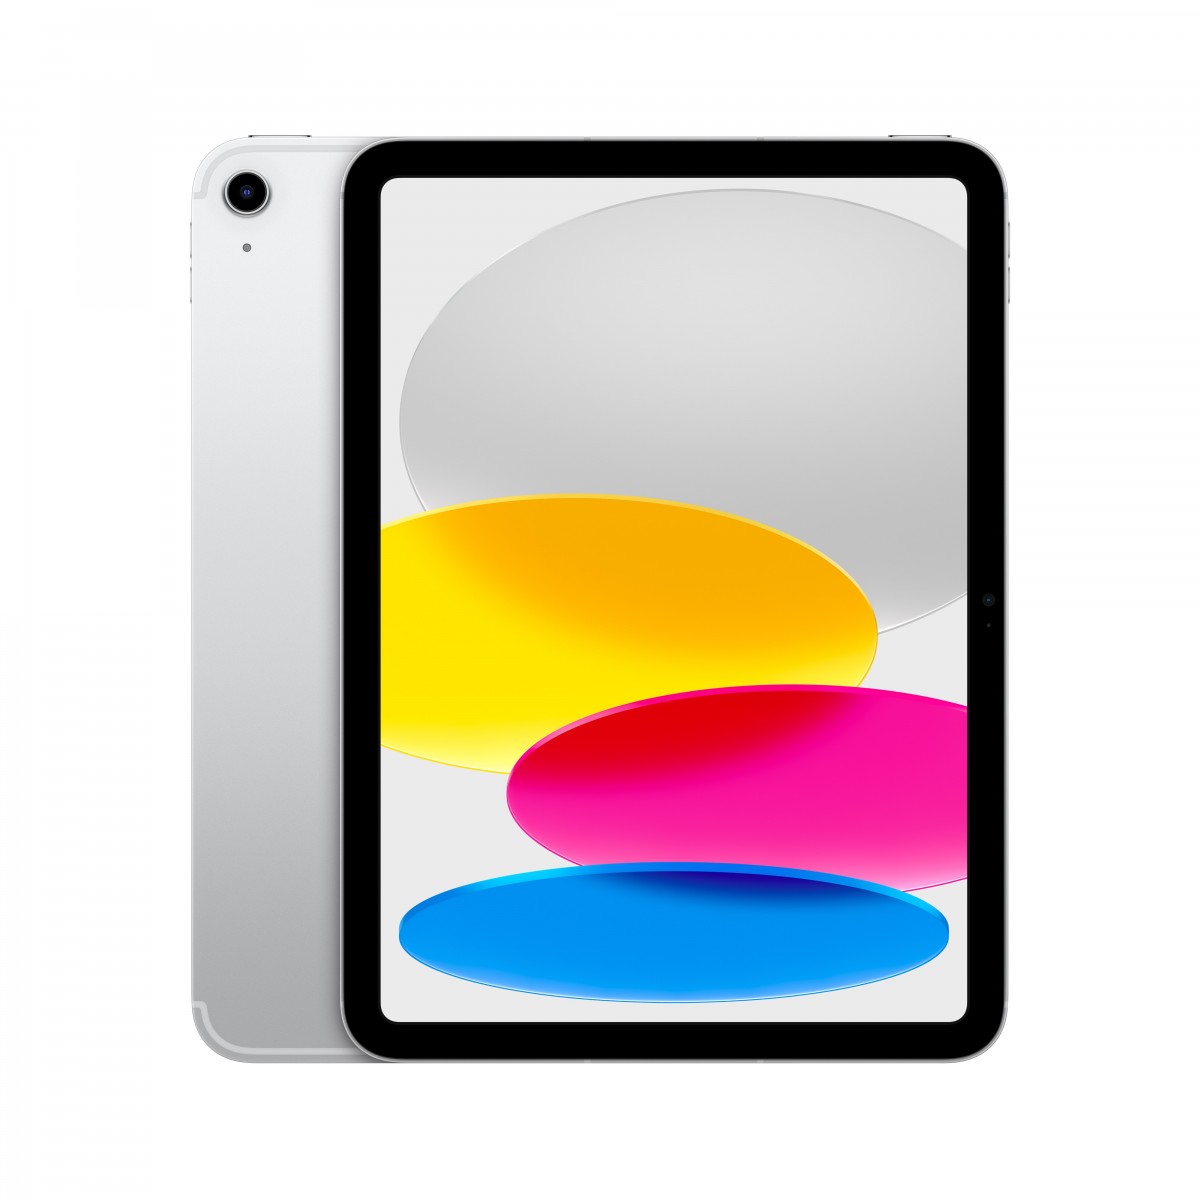 Apple iPad WF CL 256GB SILVER-BNL 10.9-inch Wi-Fi + Cellular 256 GB Silver - Tablet